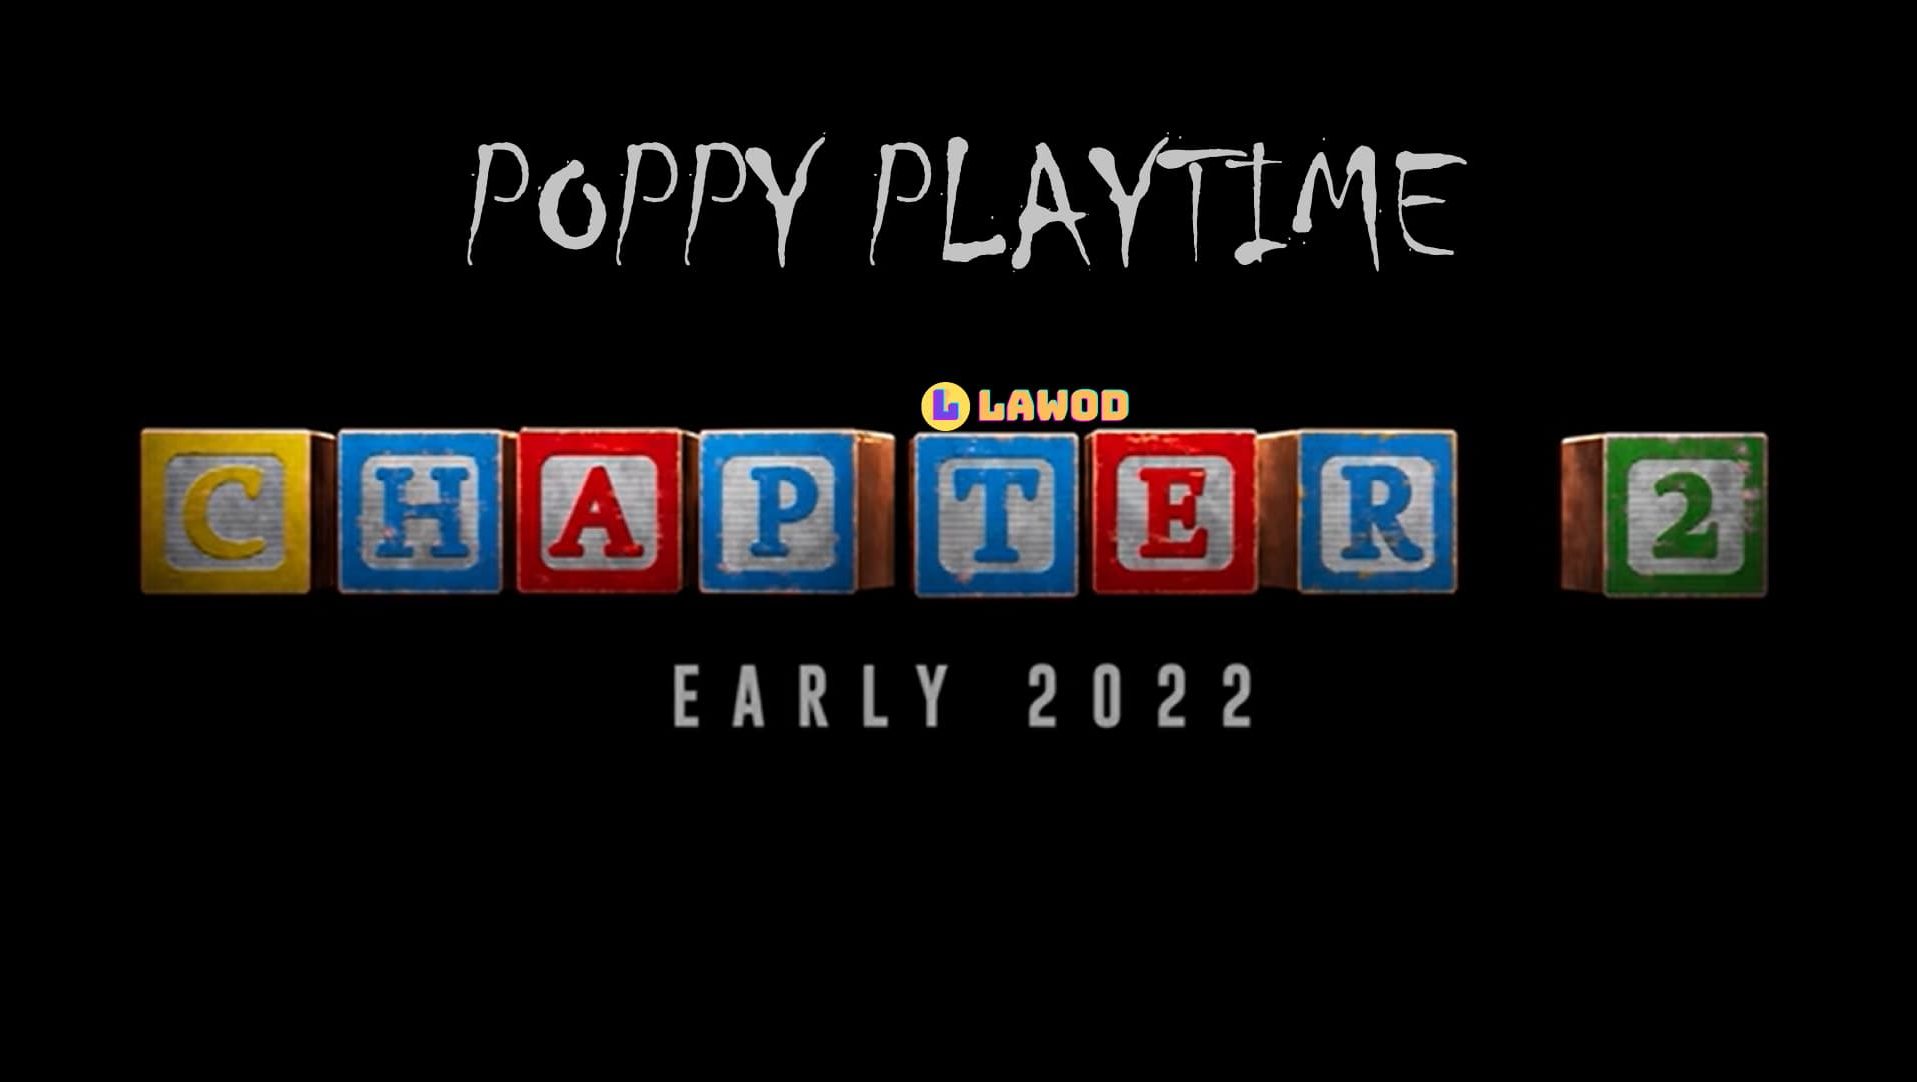 Poppy playtime chapter 2 версия. Poppy Playtime 2 часть. Poppy Playtime логотип. Poppy Play time 3. Poppy Playtime надпись.